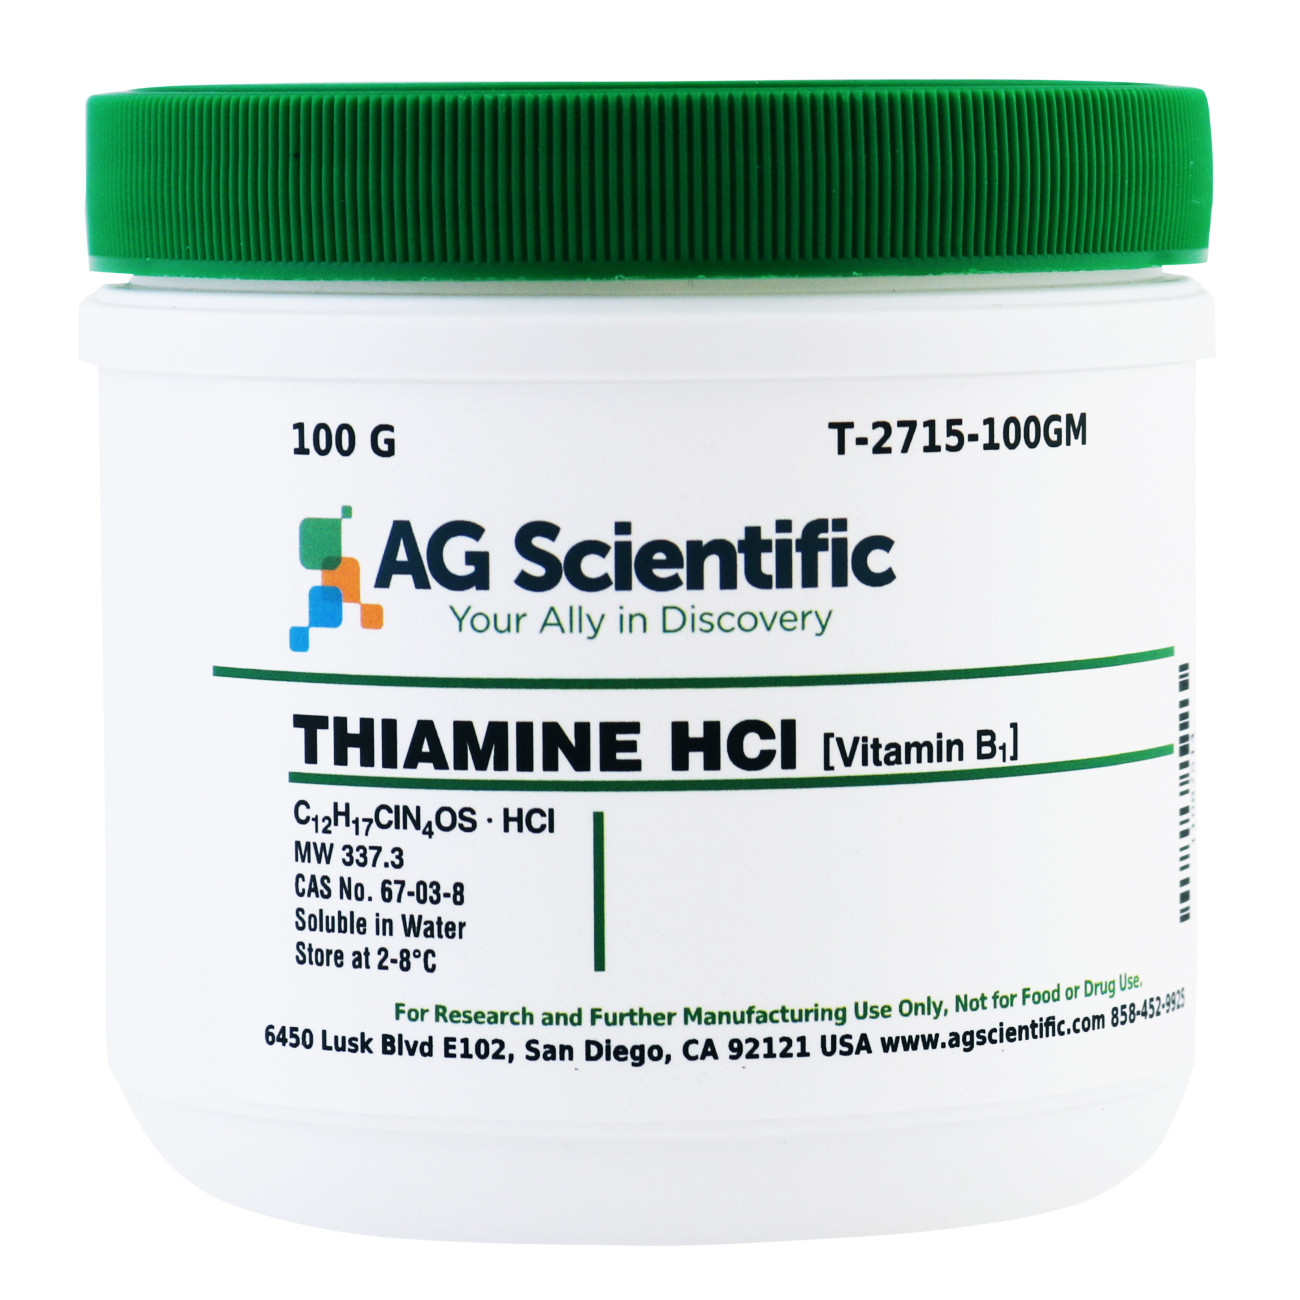 Thiamine Hydrochloride [Vitamin B1], 100 G